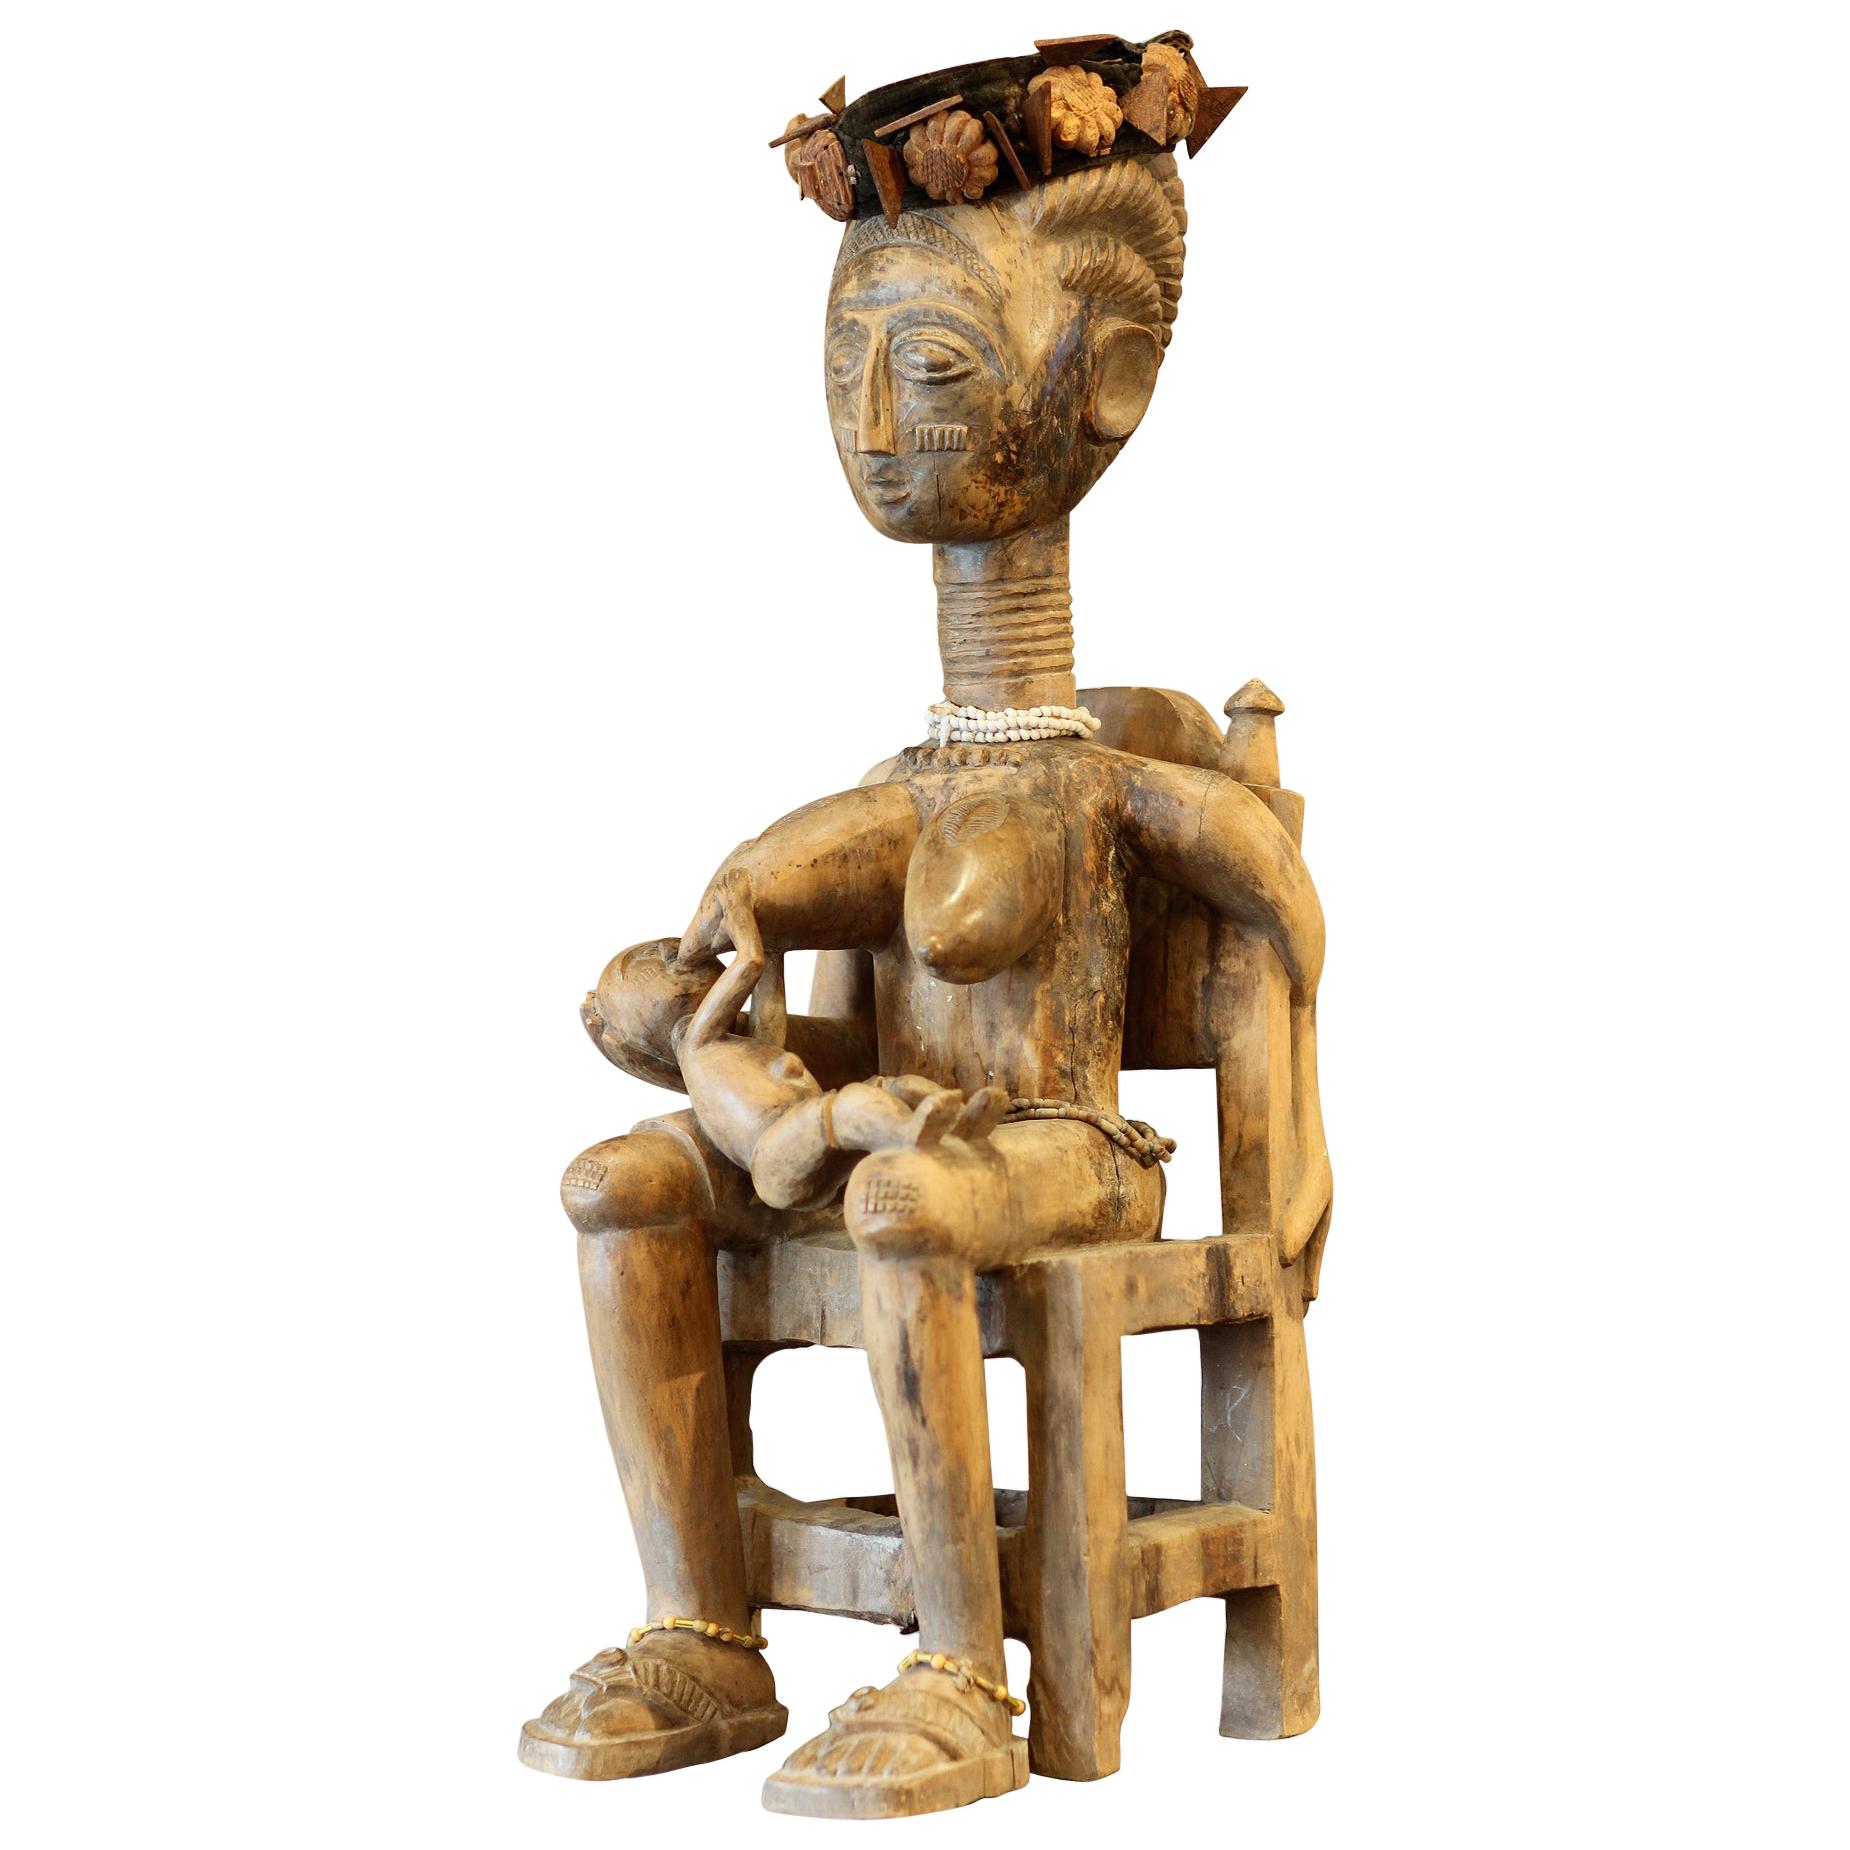 Ashanti Ghana African Art Sculpture